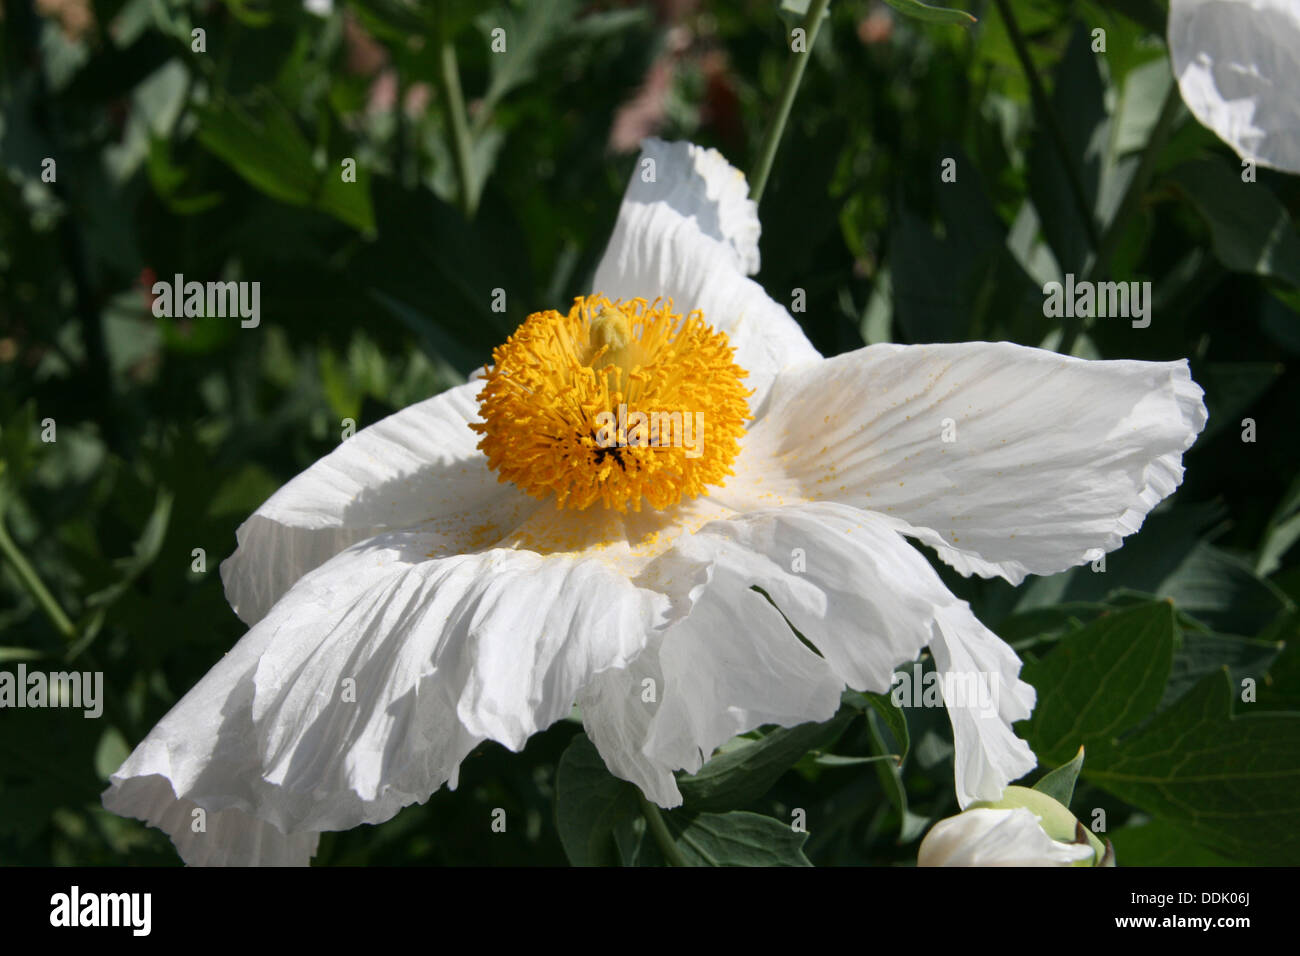 Fiore Simile Al Papavero Immagini e Fotos Stock - Alamy